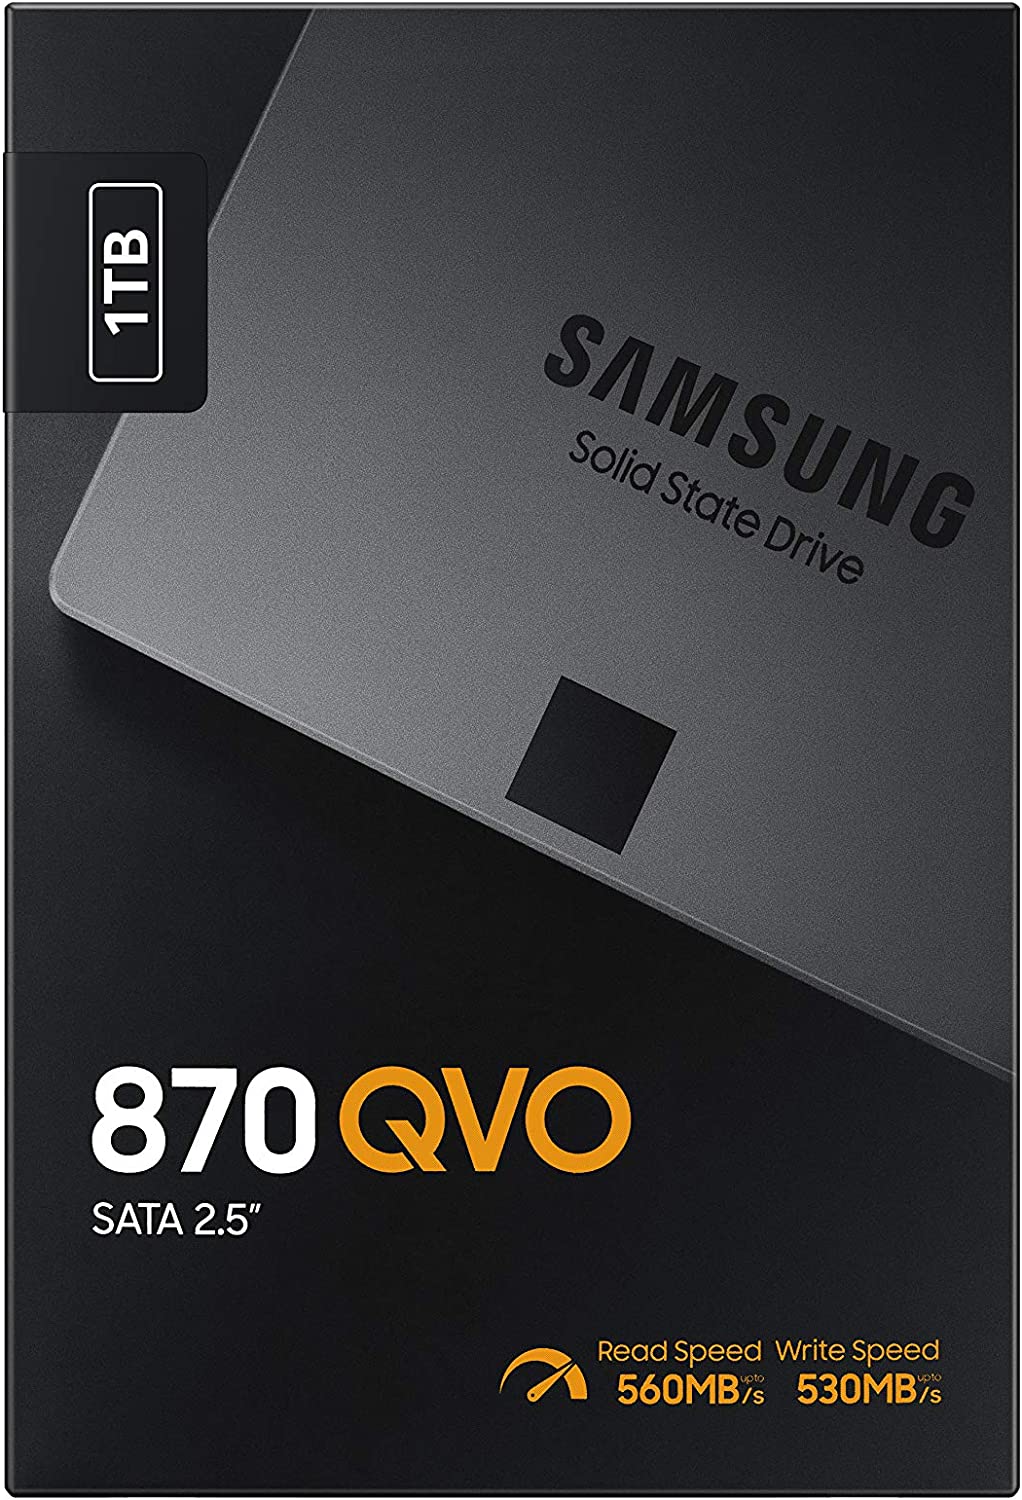 Caja presentación del Samsung 870 QVO